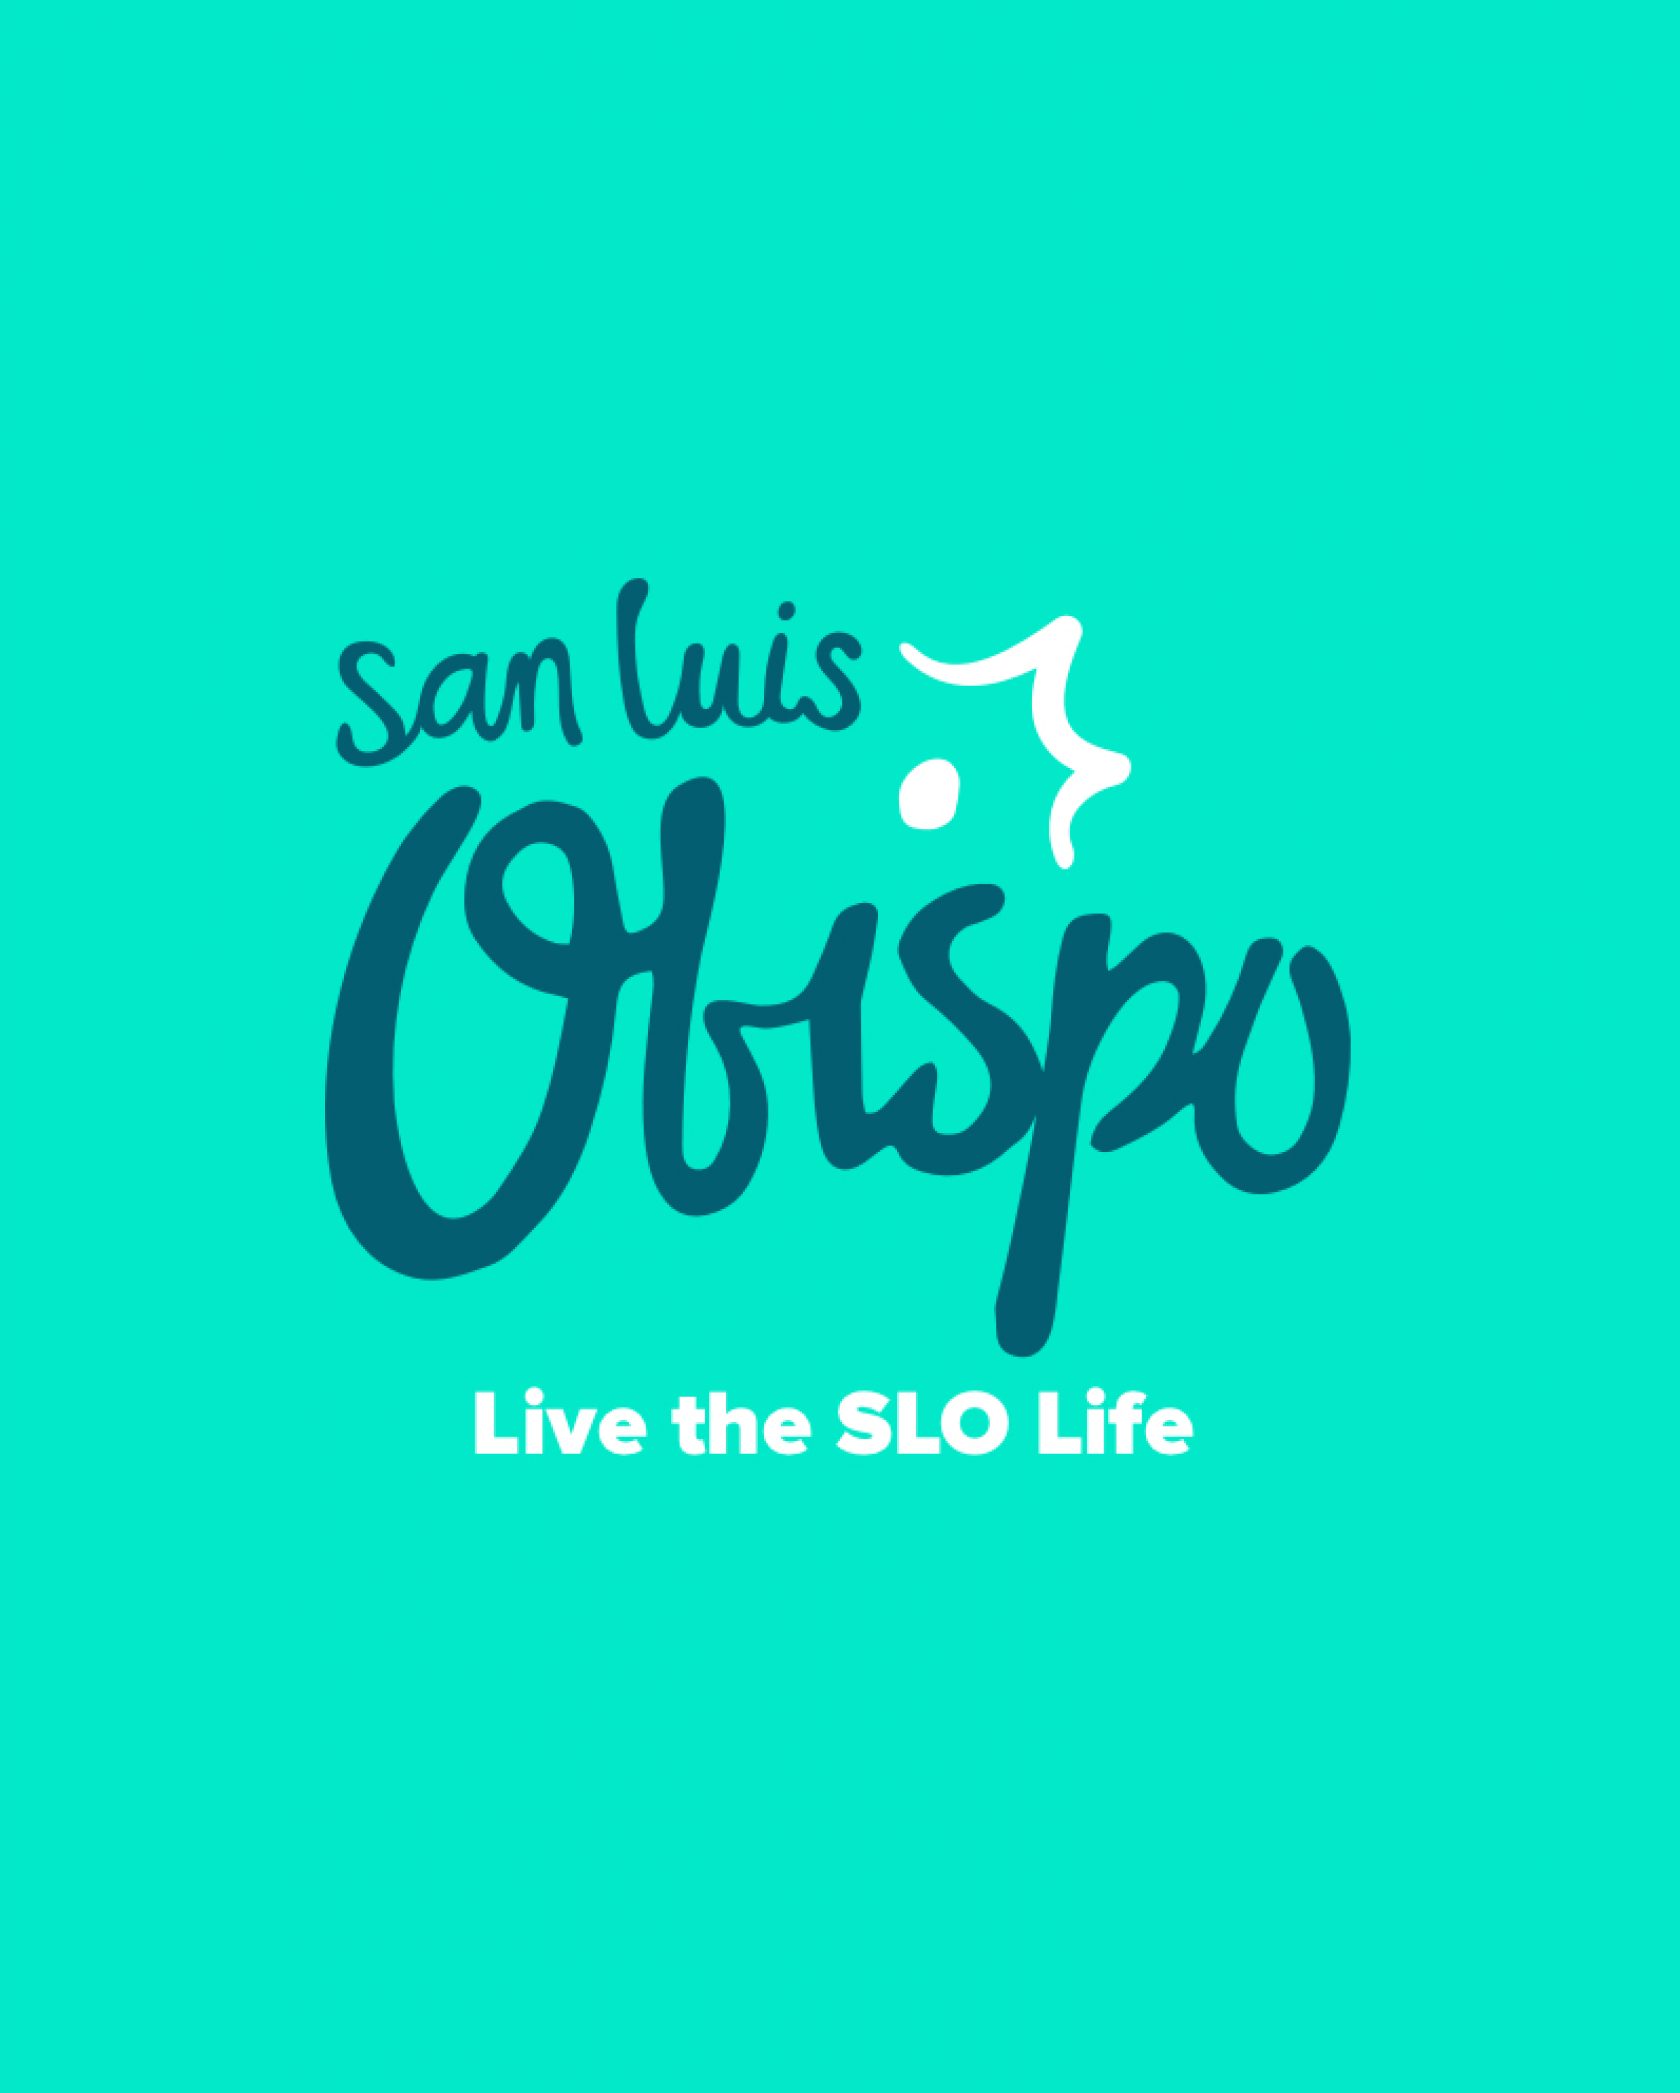 San Luis Obispo logo redesign